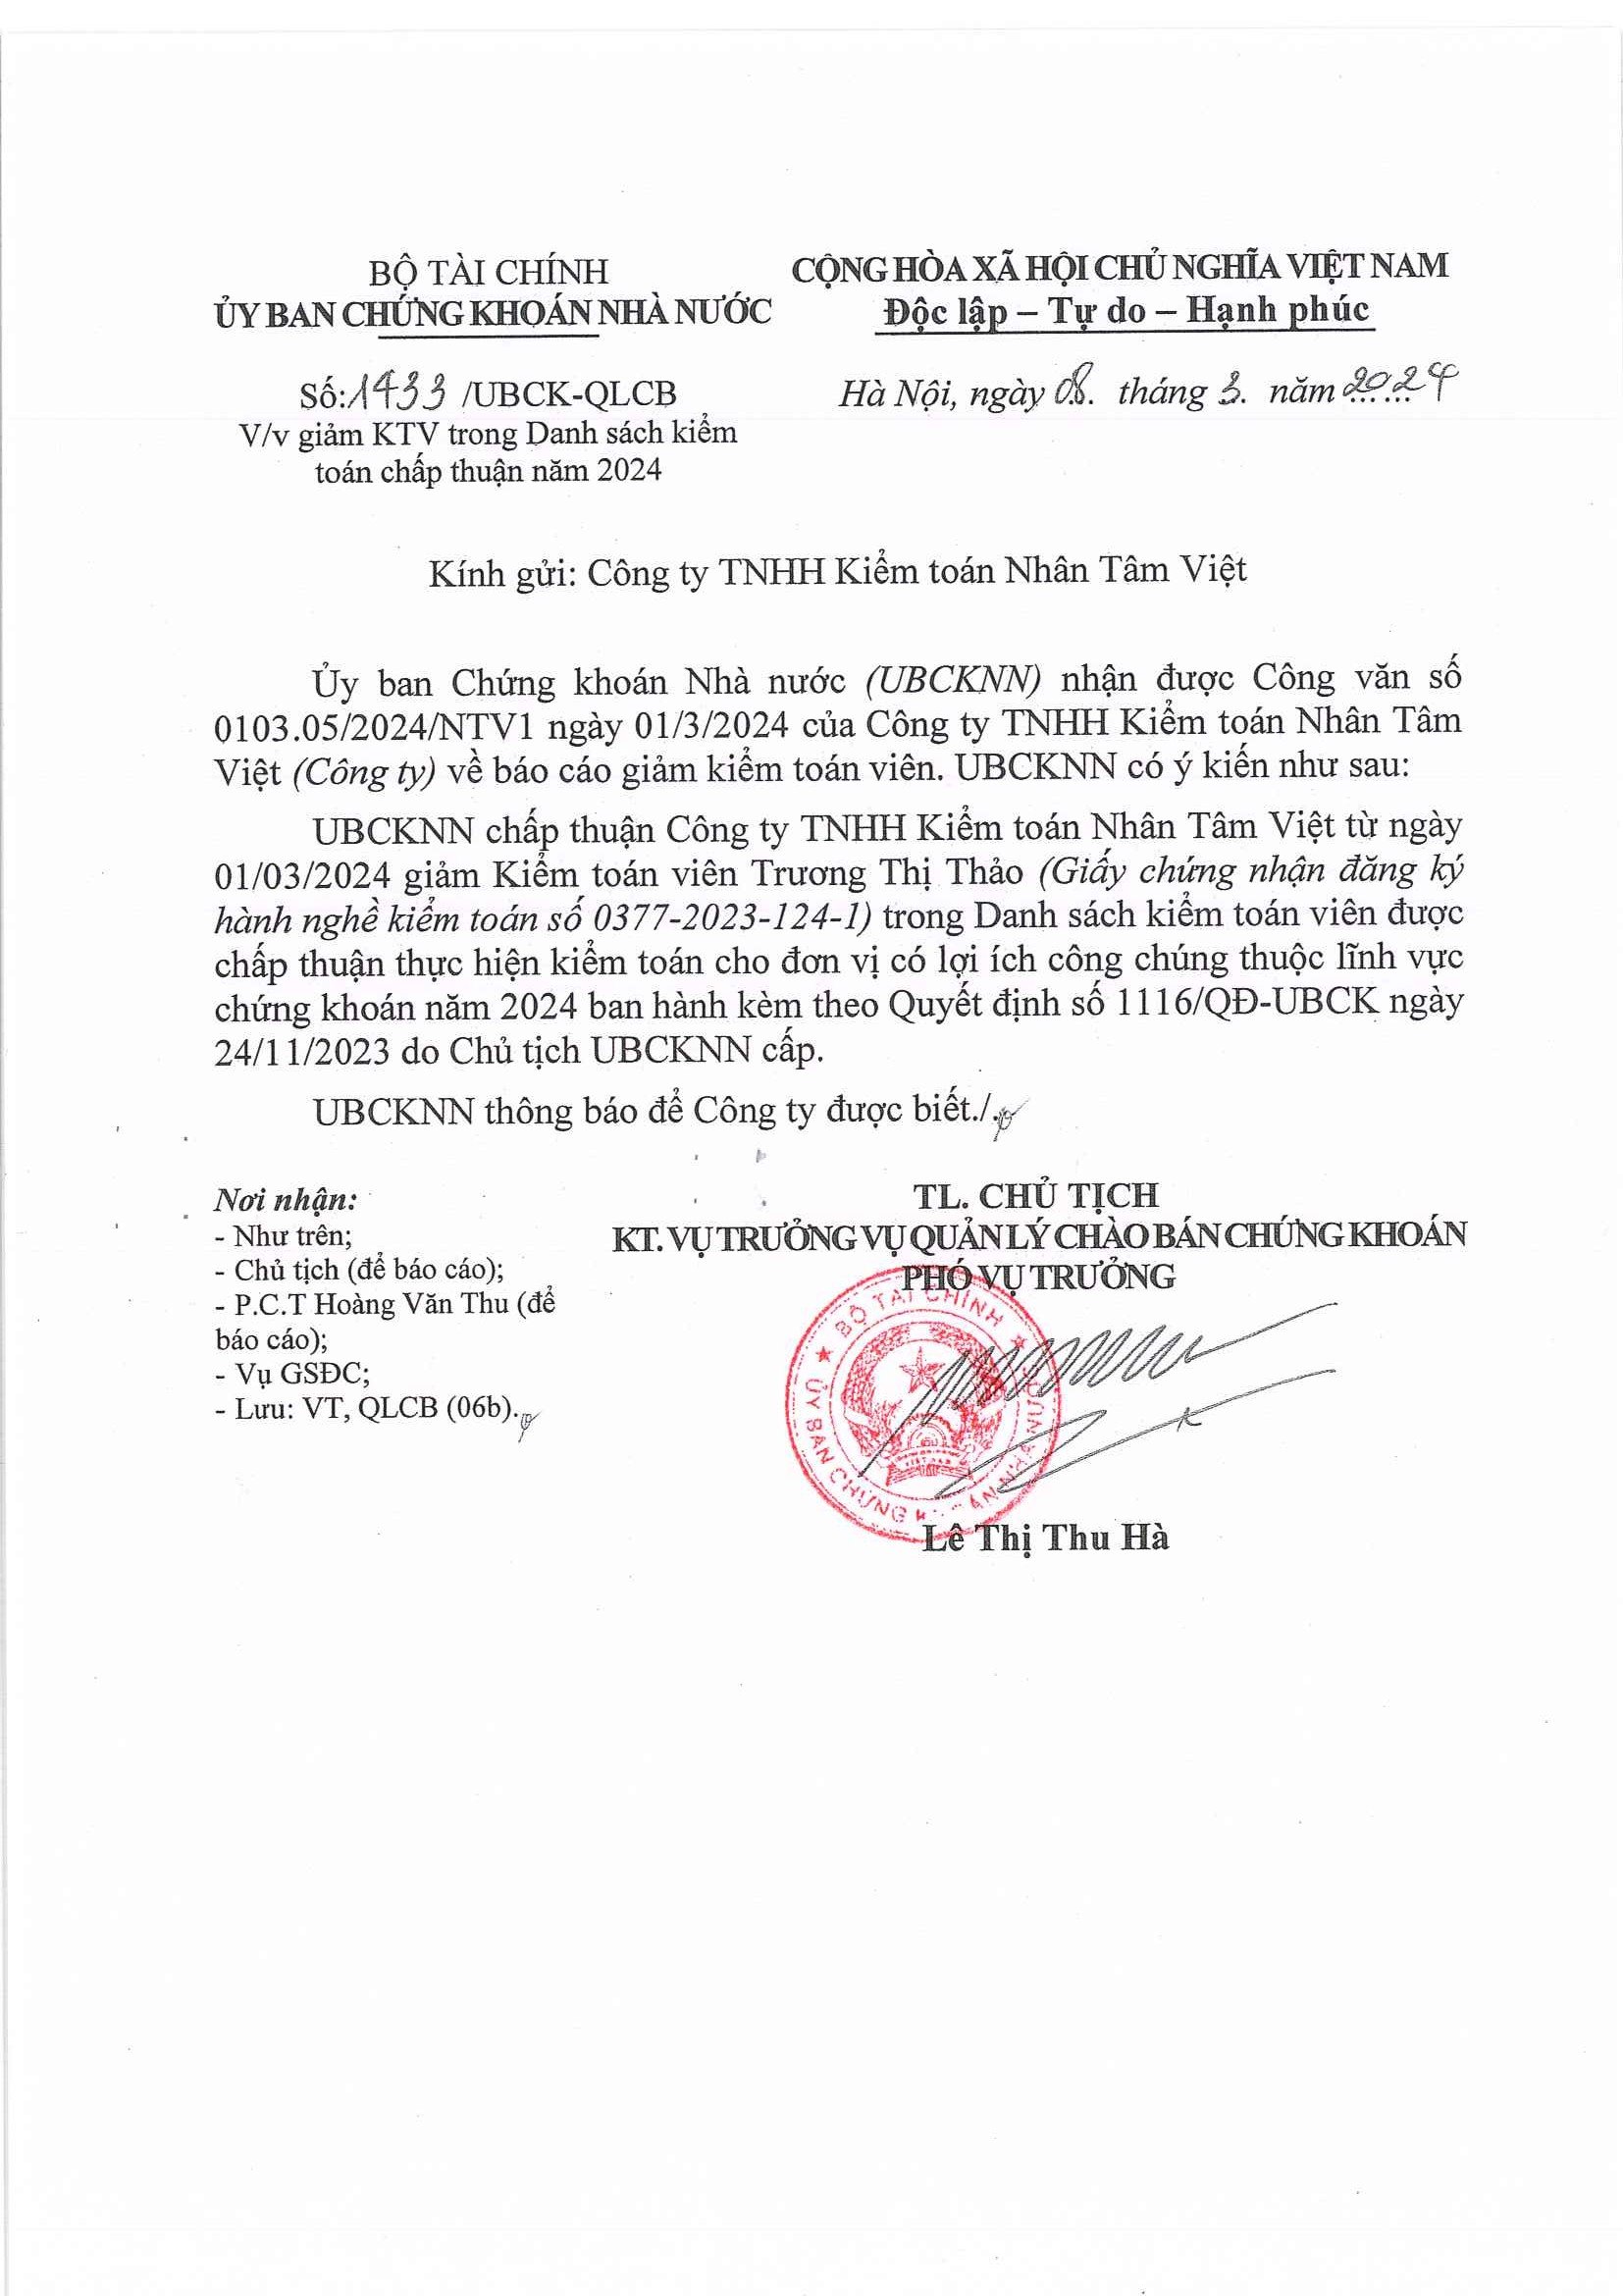 Cập nhật thông tin Báo cáo minh bạch tháng 3/2024 (Thông Báo Giảm kiểm toán viên Trương Th�� Thảo trong danh sách Kiểm toán viên được kiểm toán cho các đơn vị có LICC năm 2024)